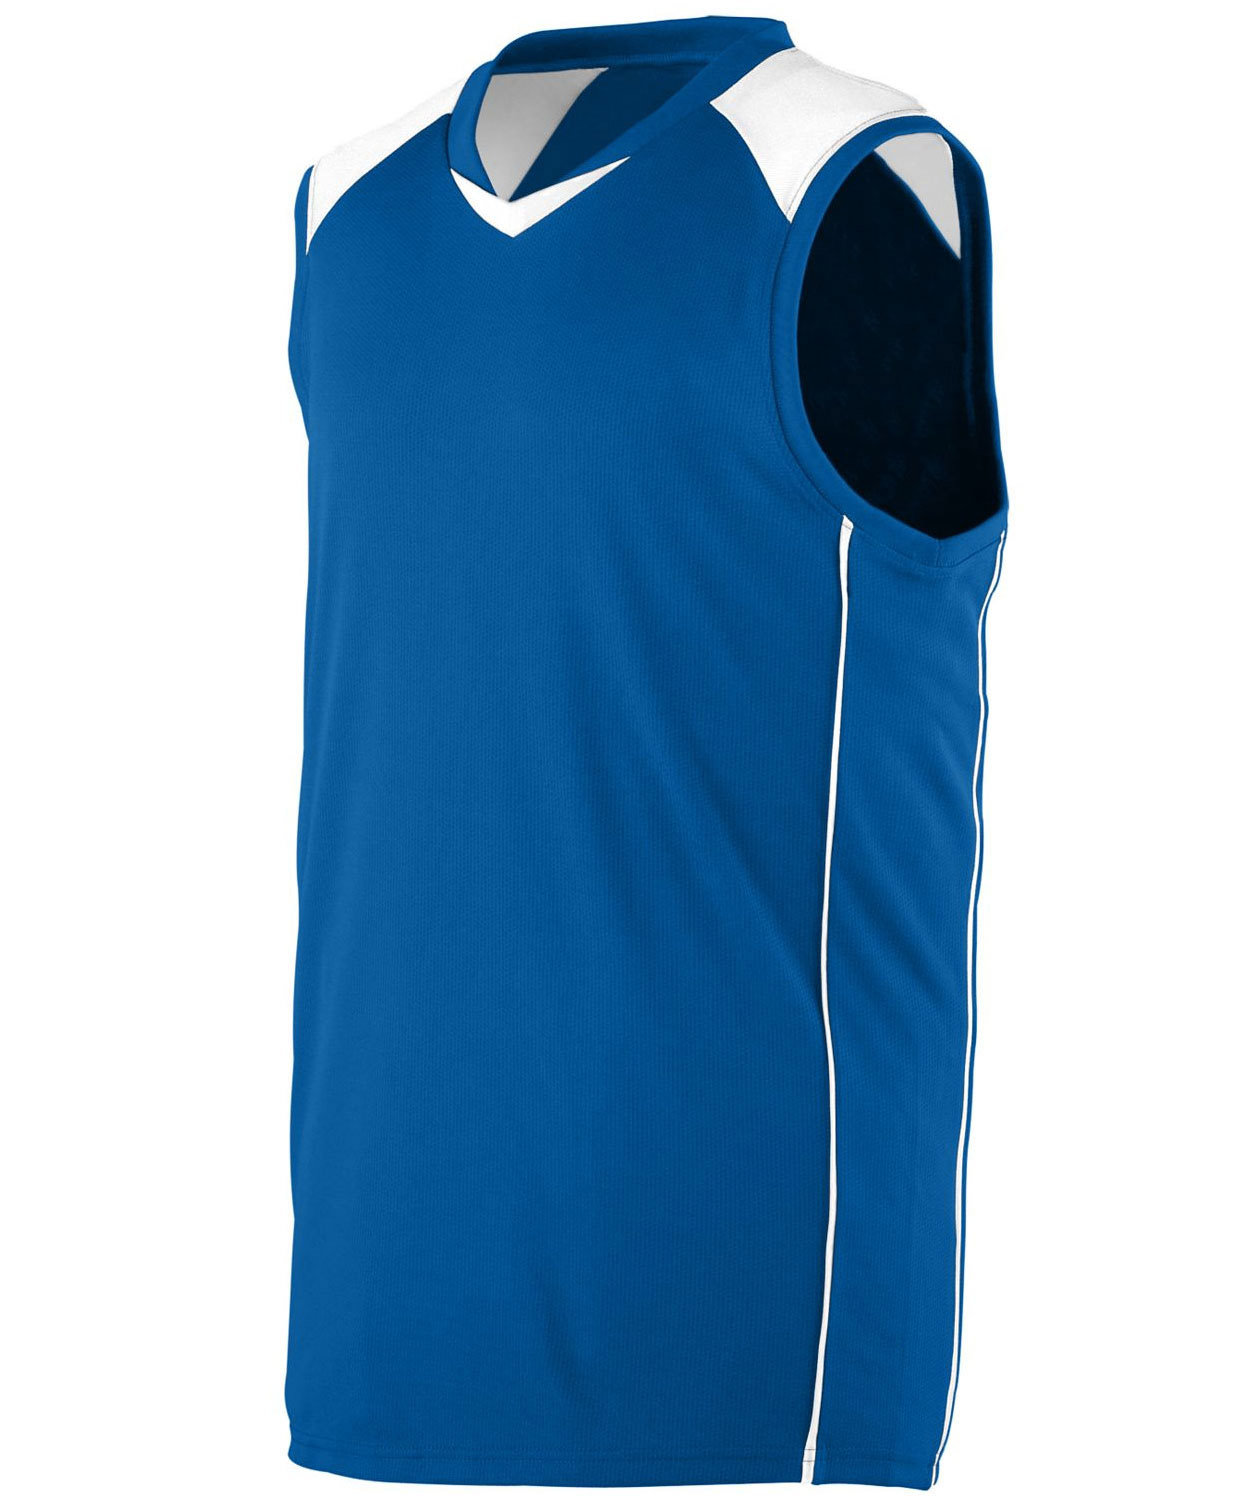 plain blue jersey basketball